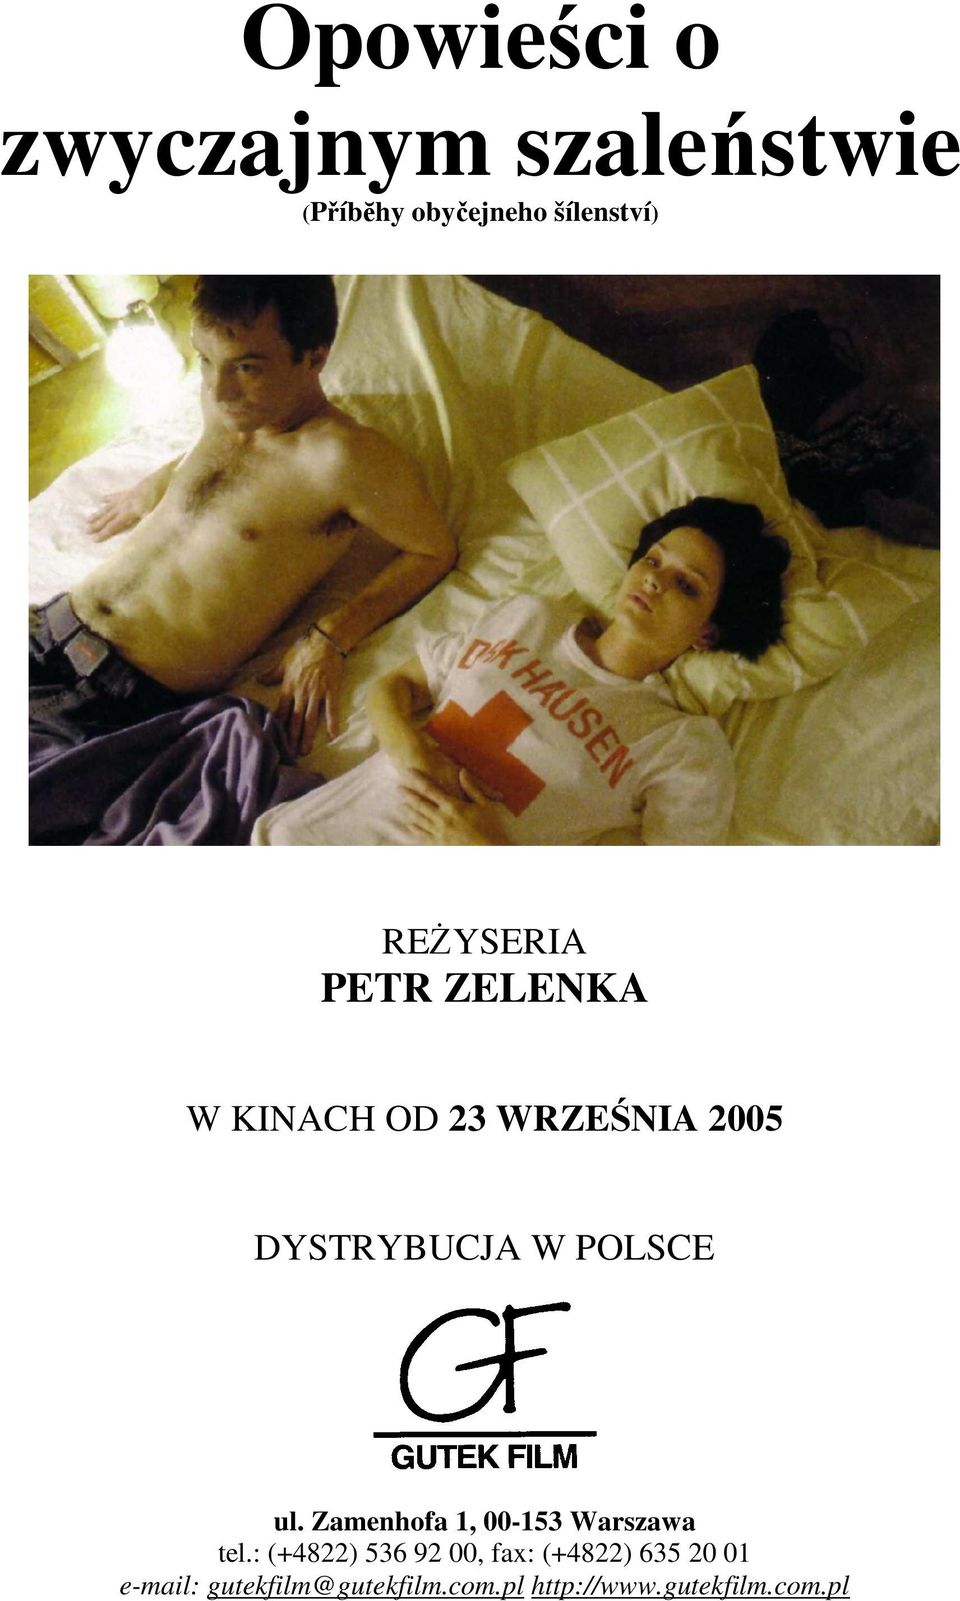 POLSCE ul. Zamenhofa 1, 00-153 Warszawa tel.